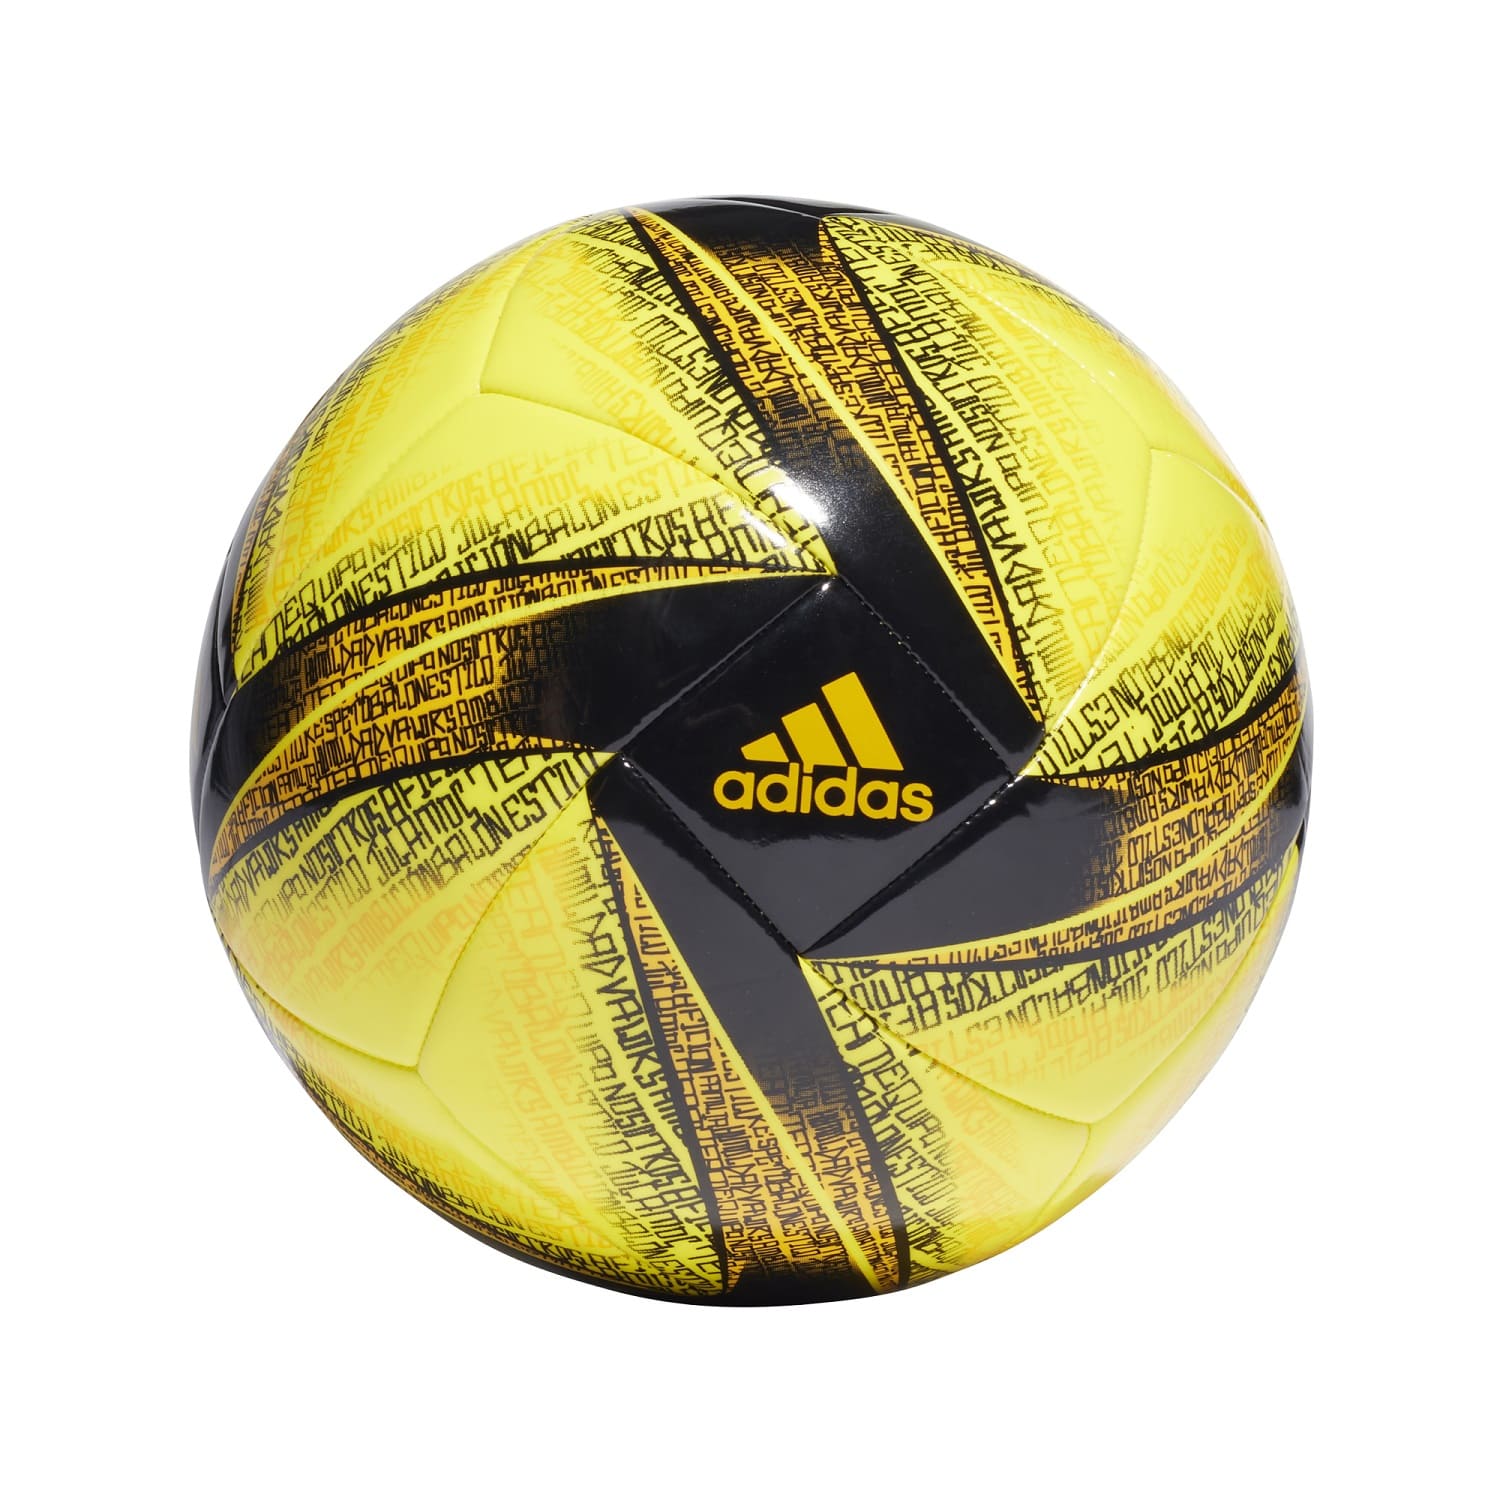 Adidas Messi Club Ball